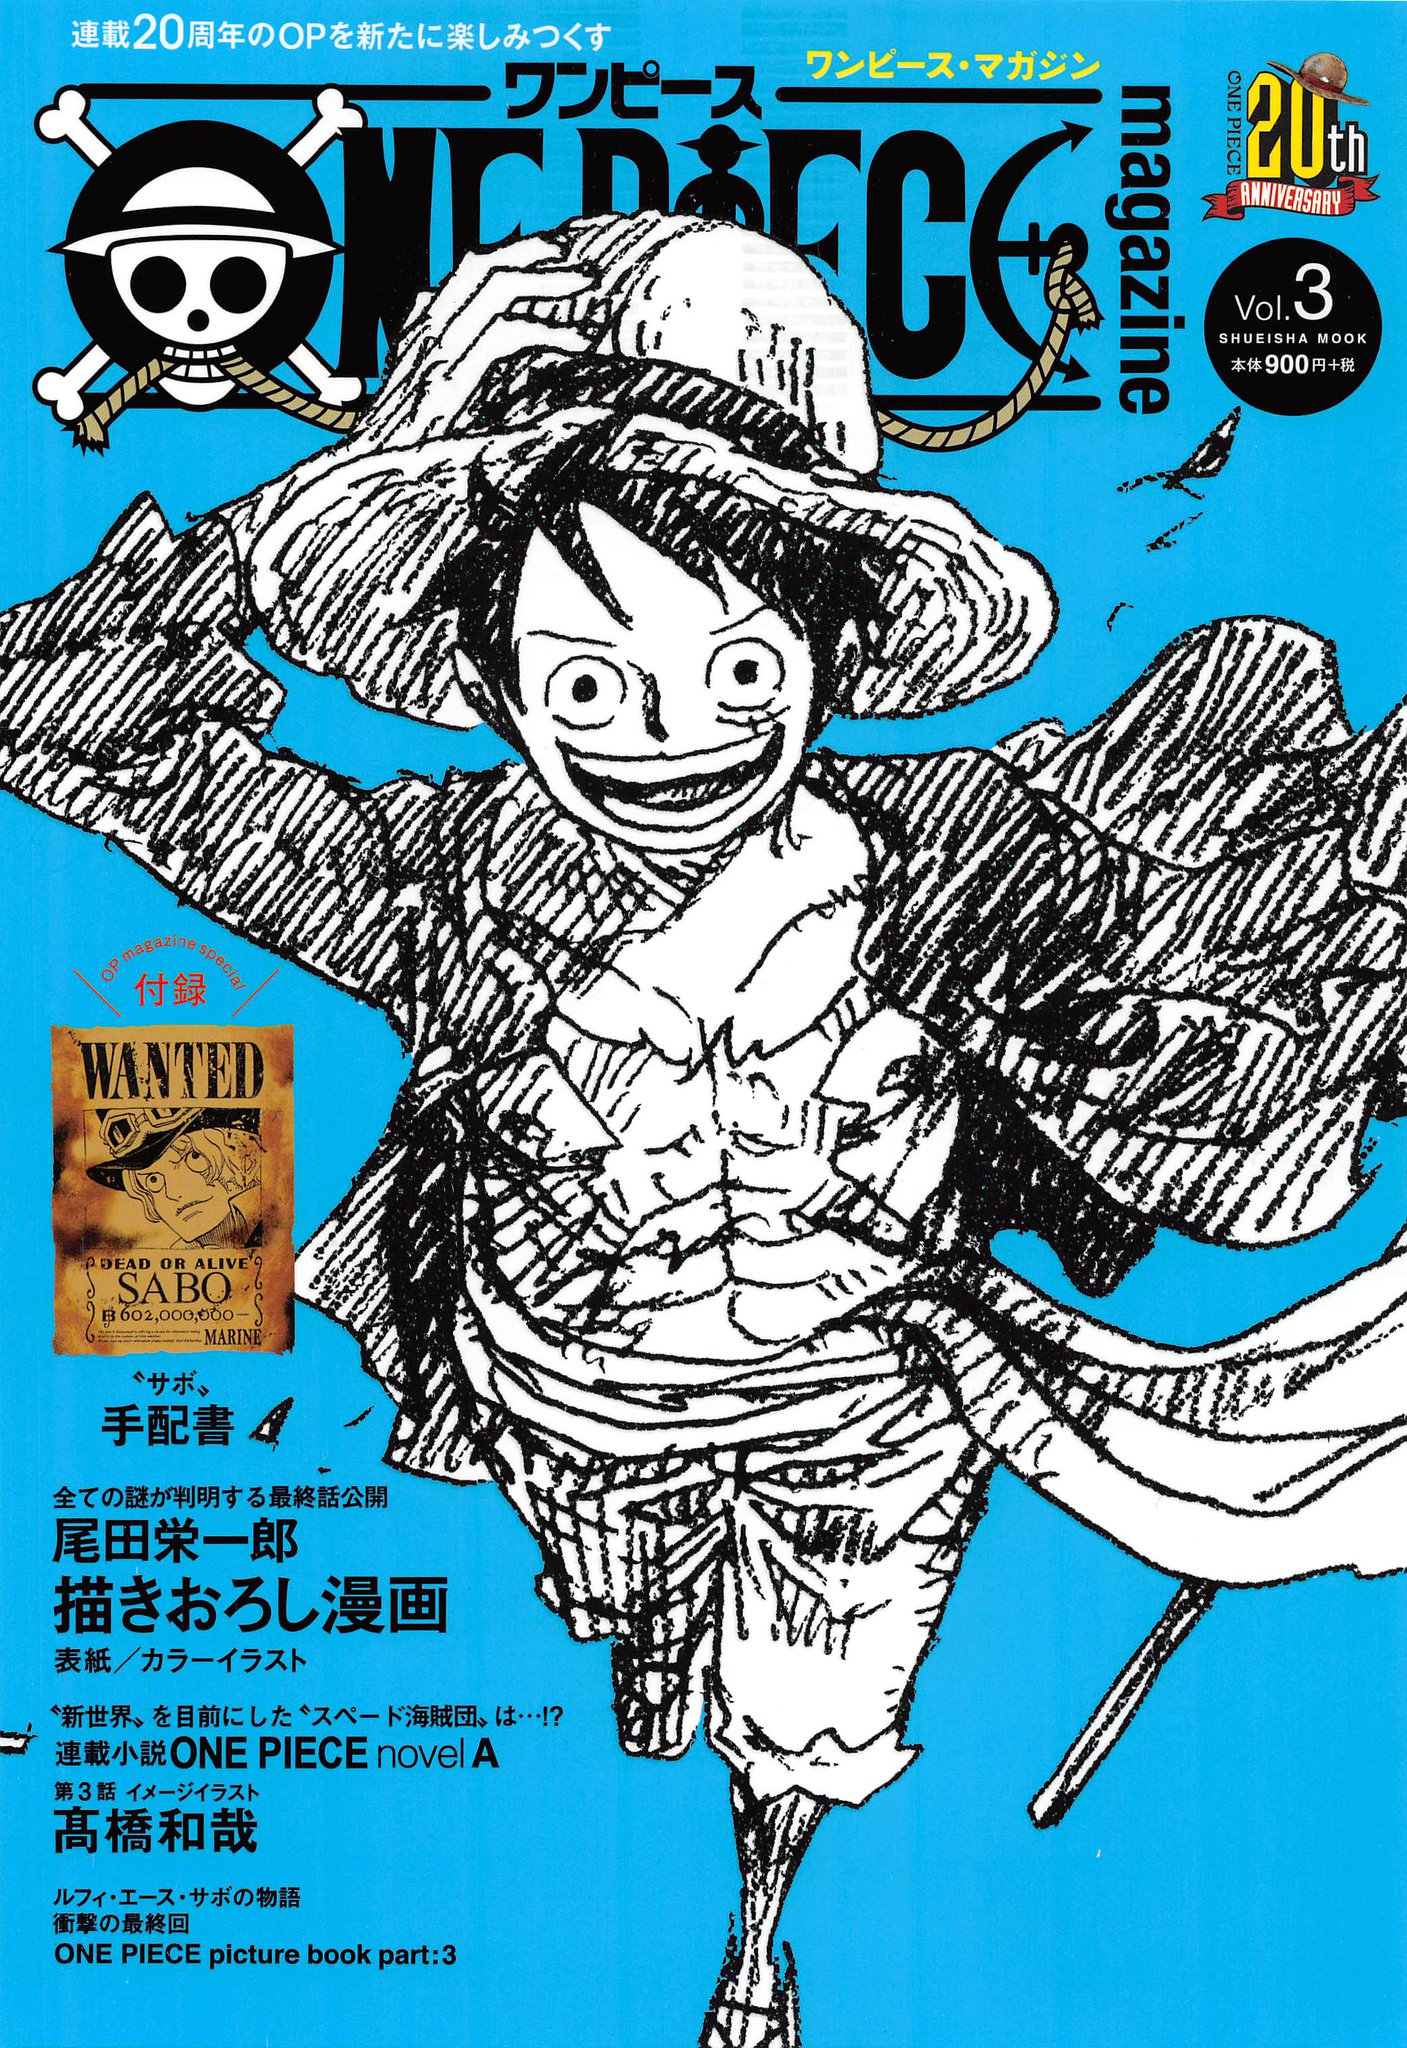 One Piece Magazine Vol 3 One Piece Wiki Fandom